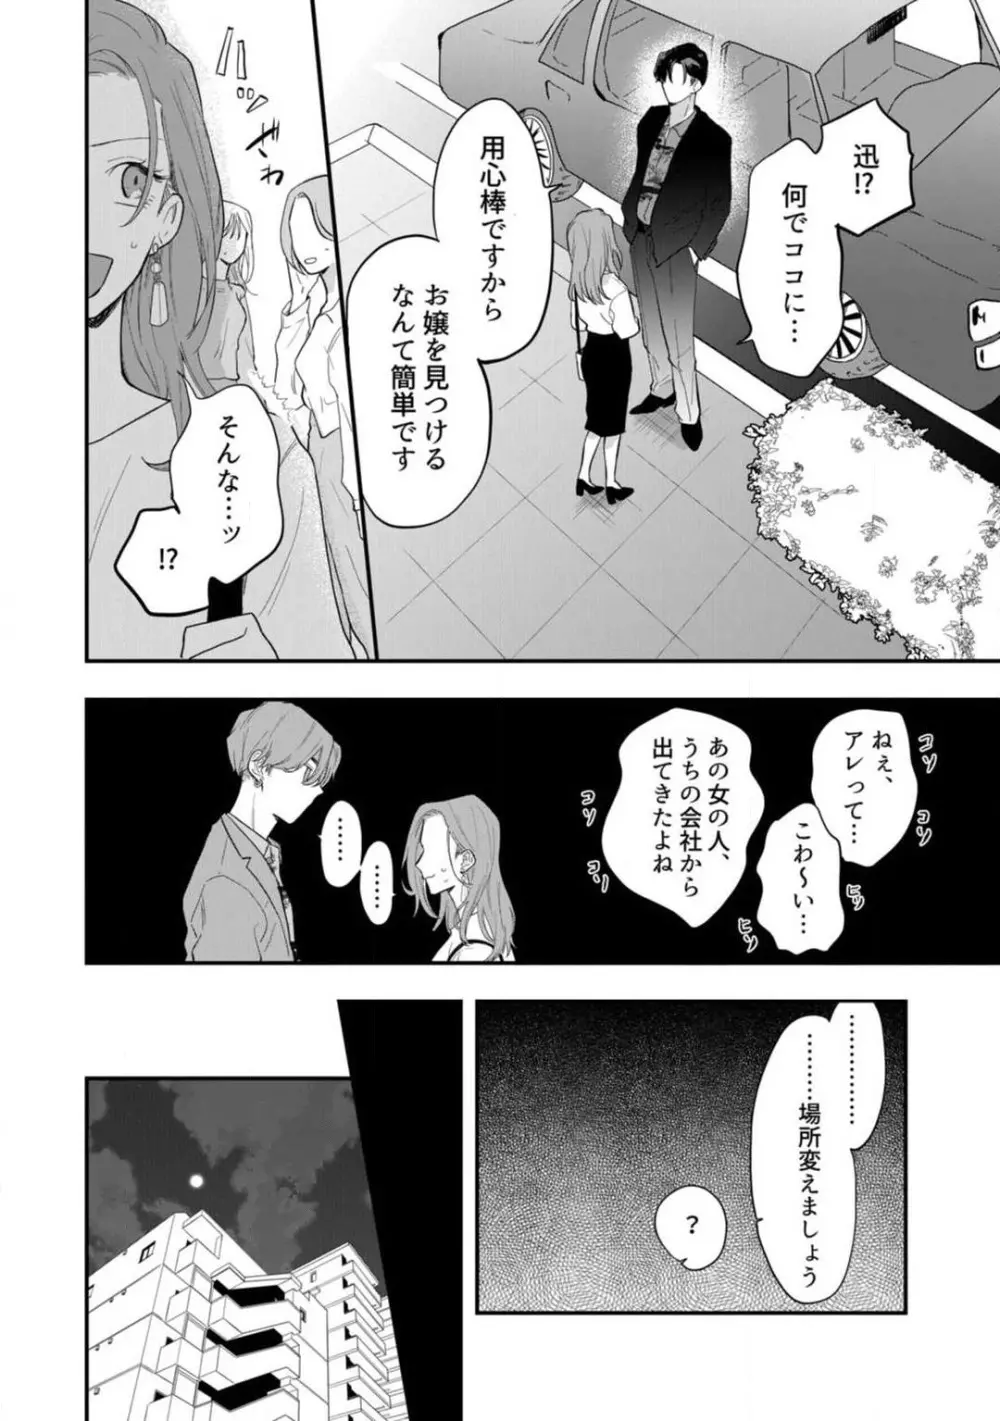 一途な束縛ヤクザはお嬢を離さない!? 〜秘密の恋人生活〜 1-3 11ページ